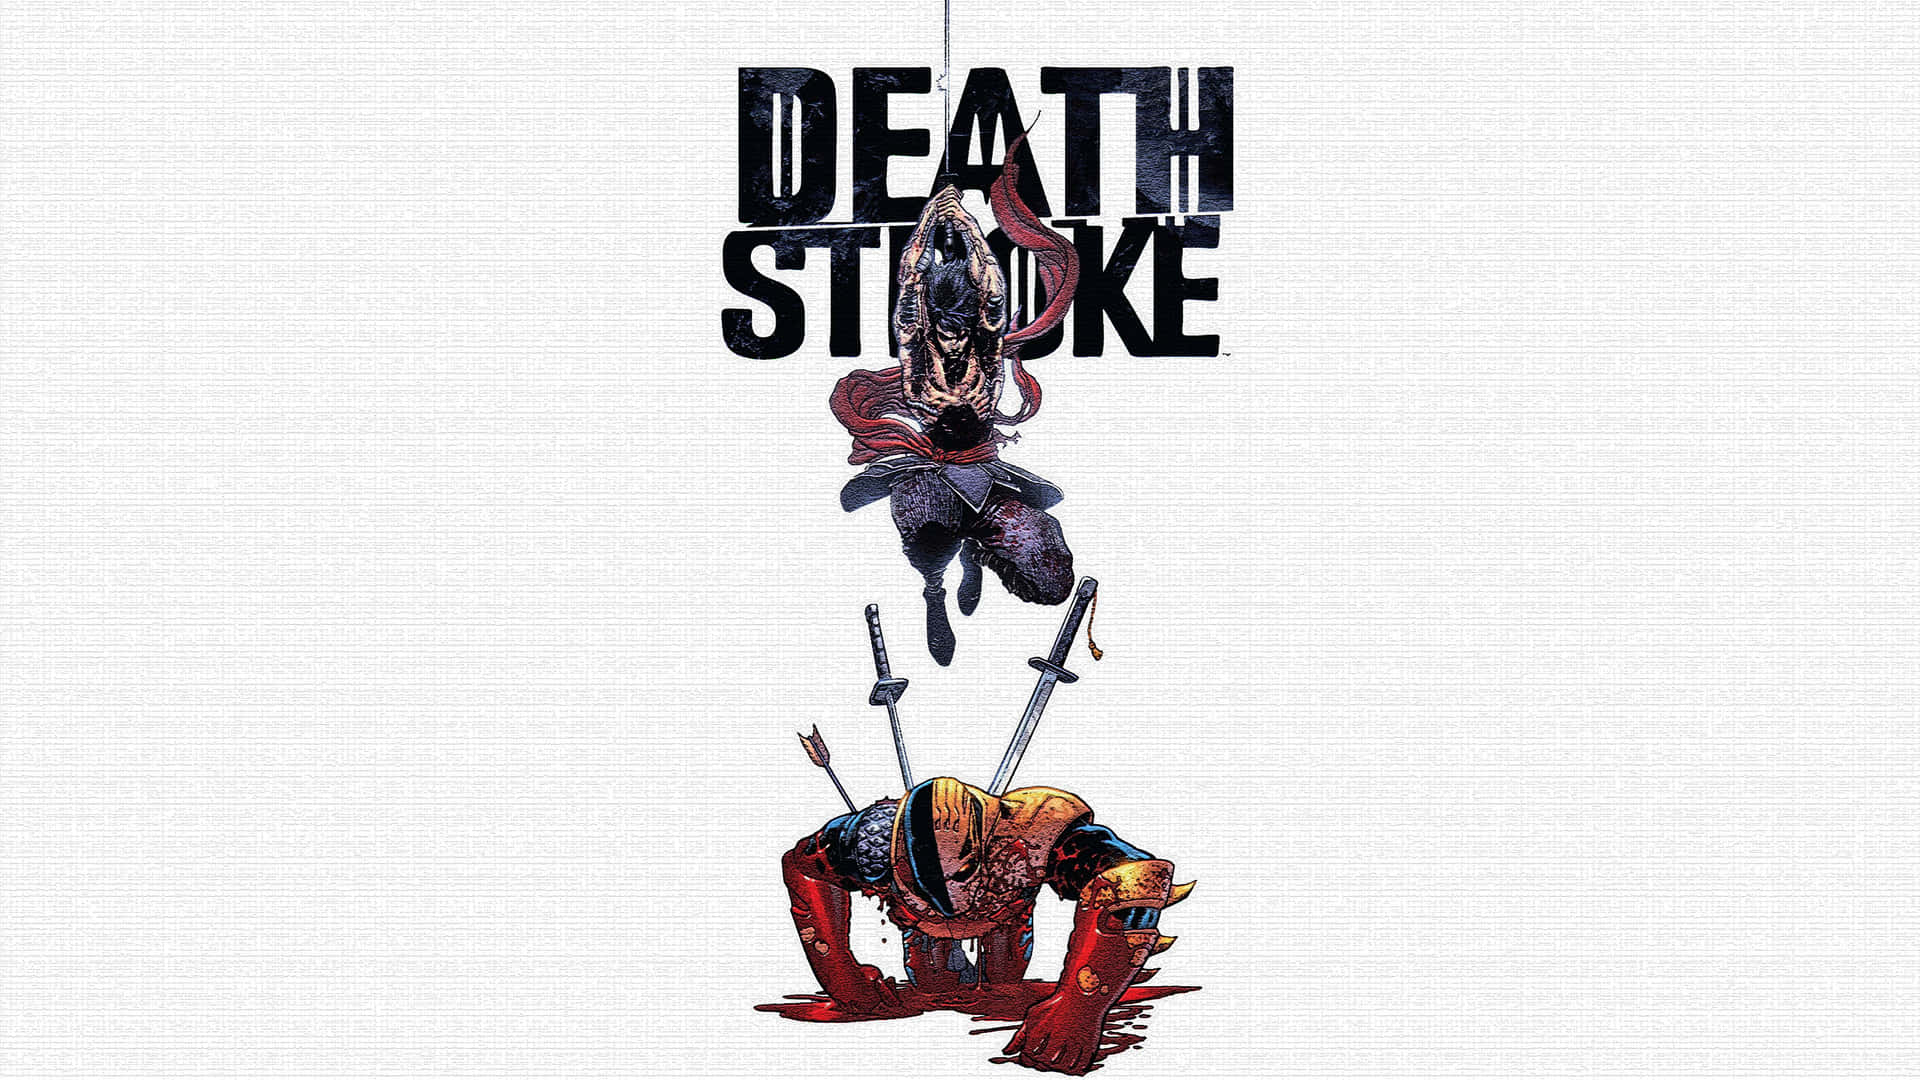 Death Stroke - A Comic Book Cover